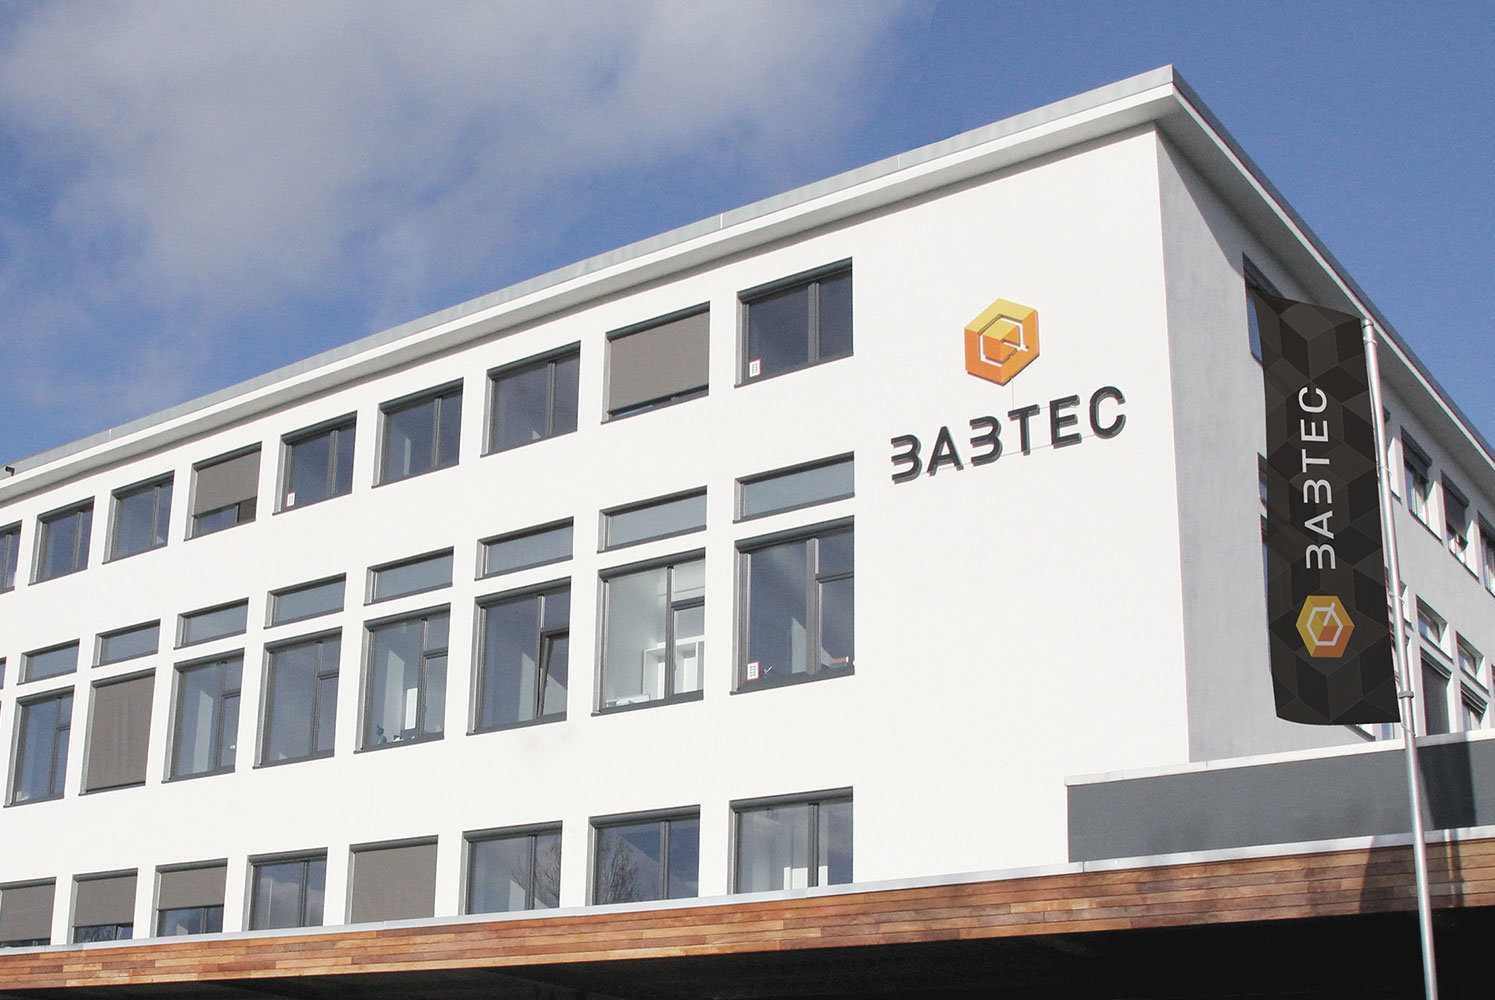 Firmengebäude von Babtec in Wuppertal